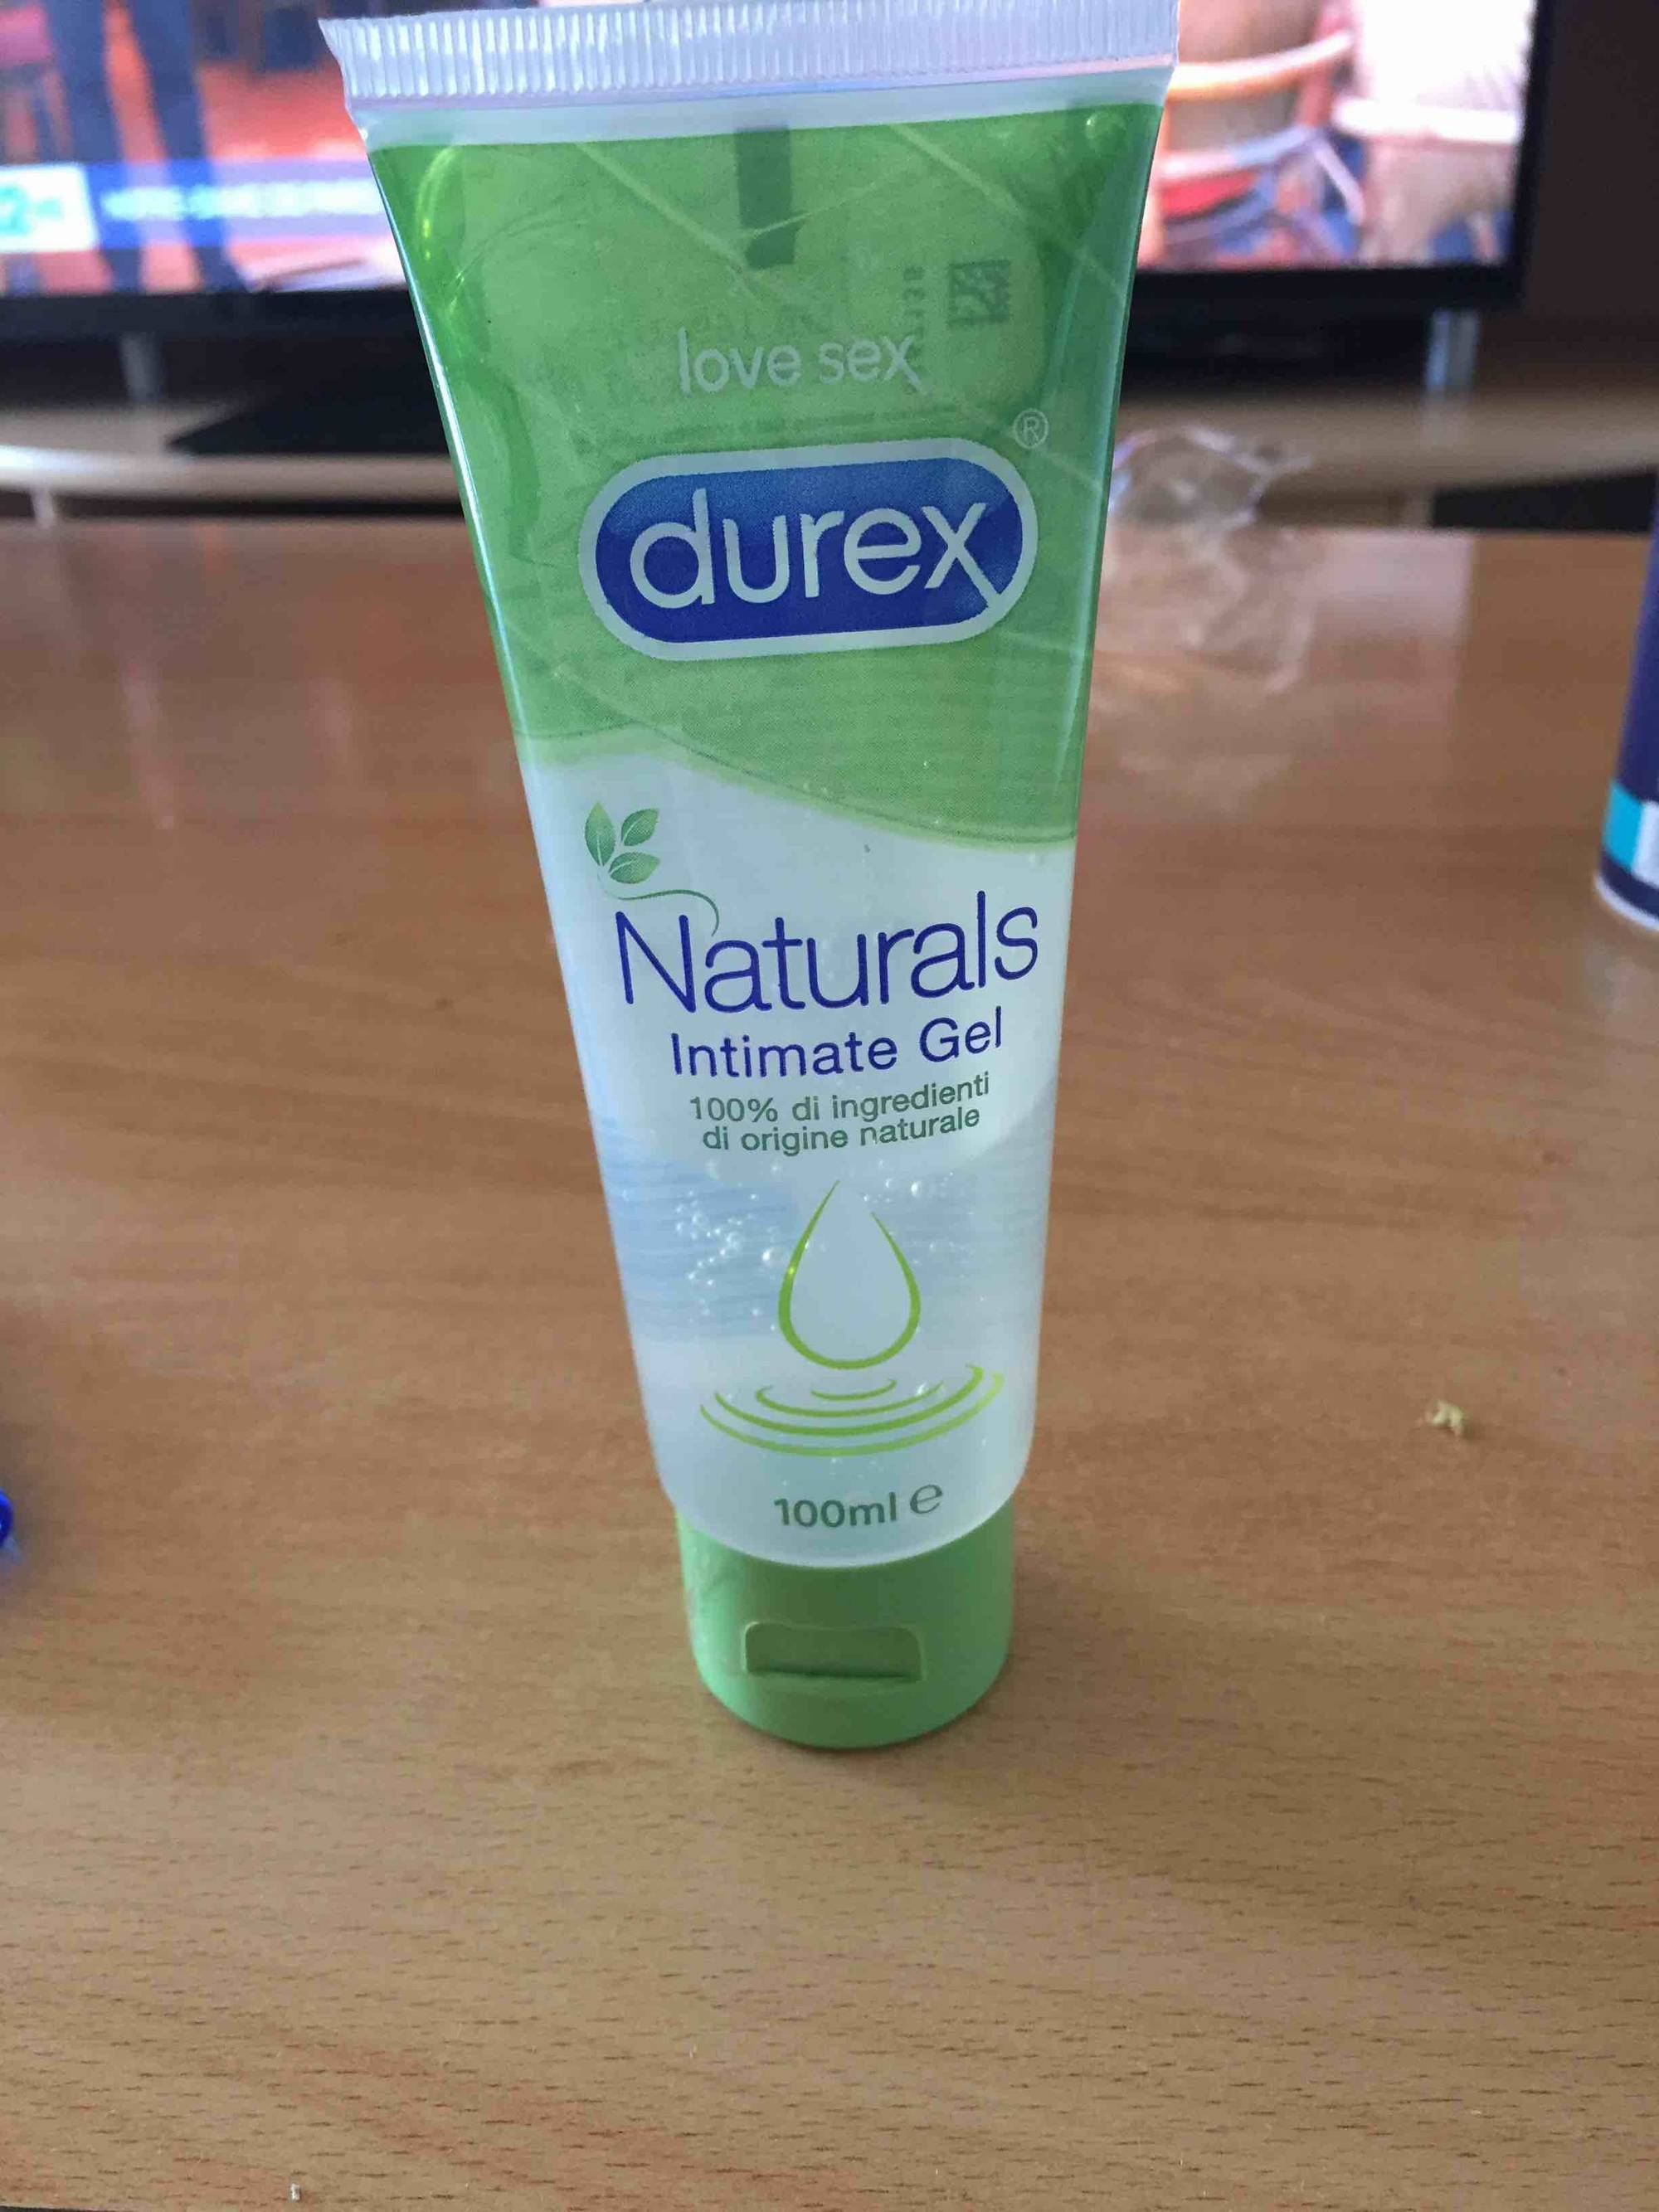 DUREX - Love sex - Natural intimate gel